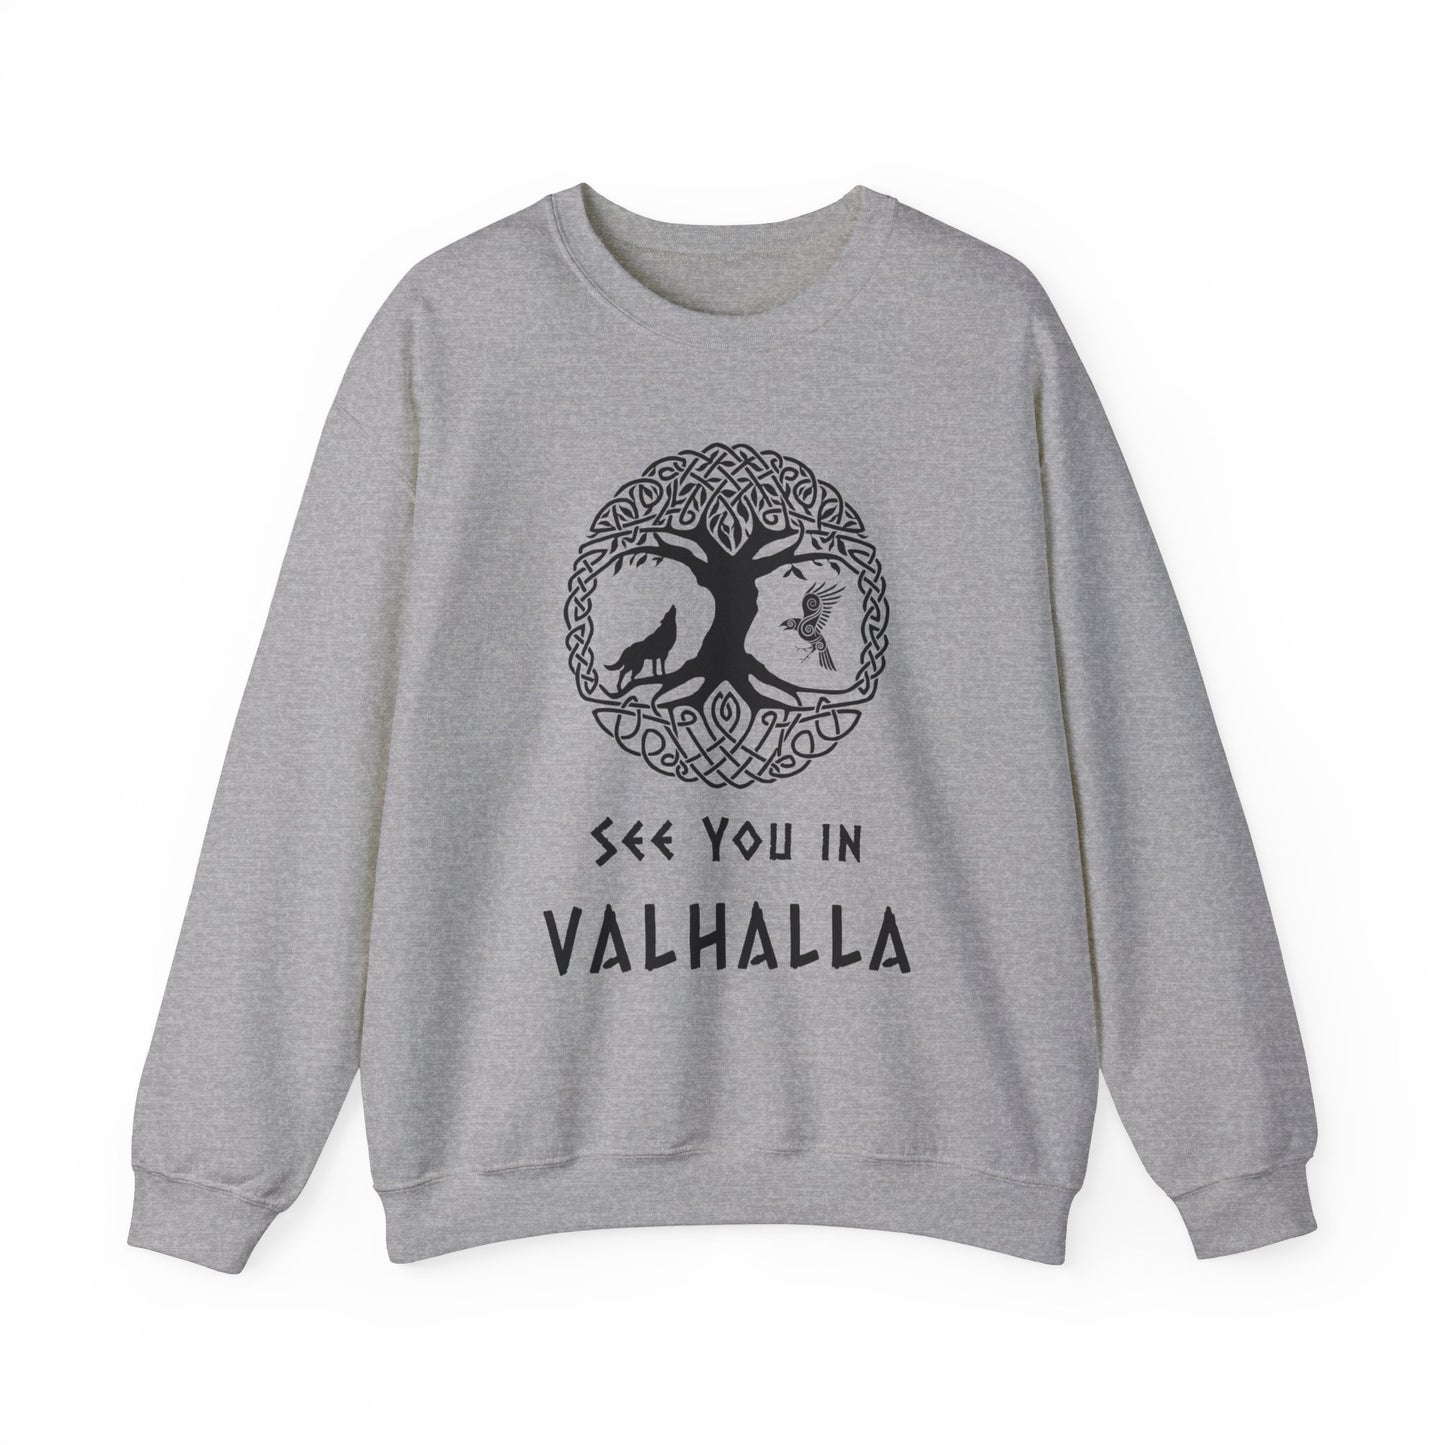 Wikinger Valhalla Sweatshirt - Yggdrasil mit Wolf und Rabe